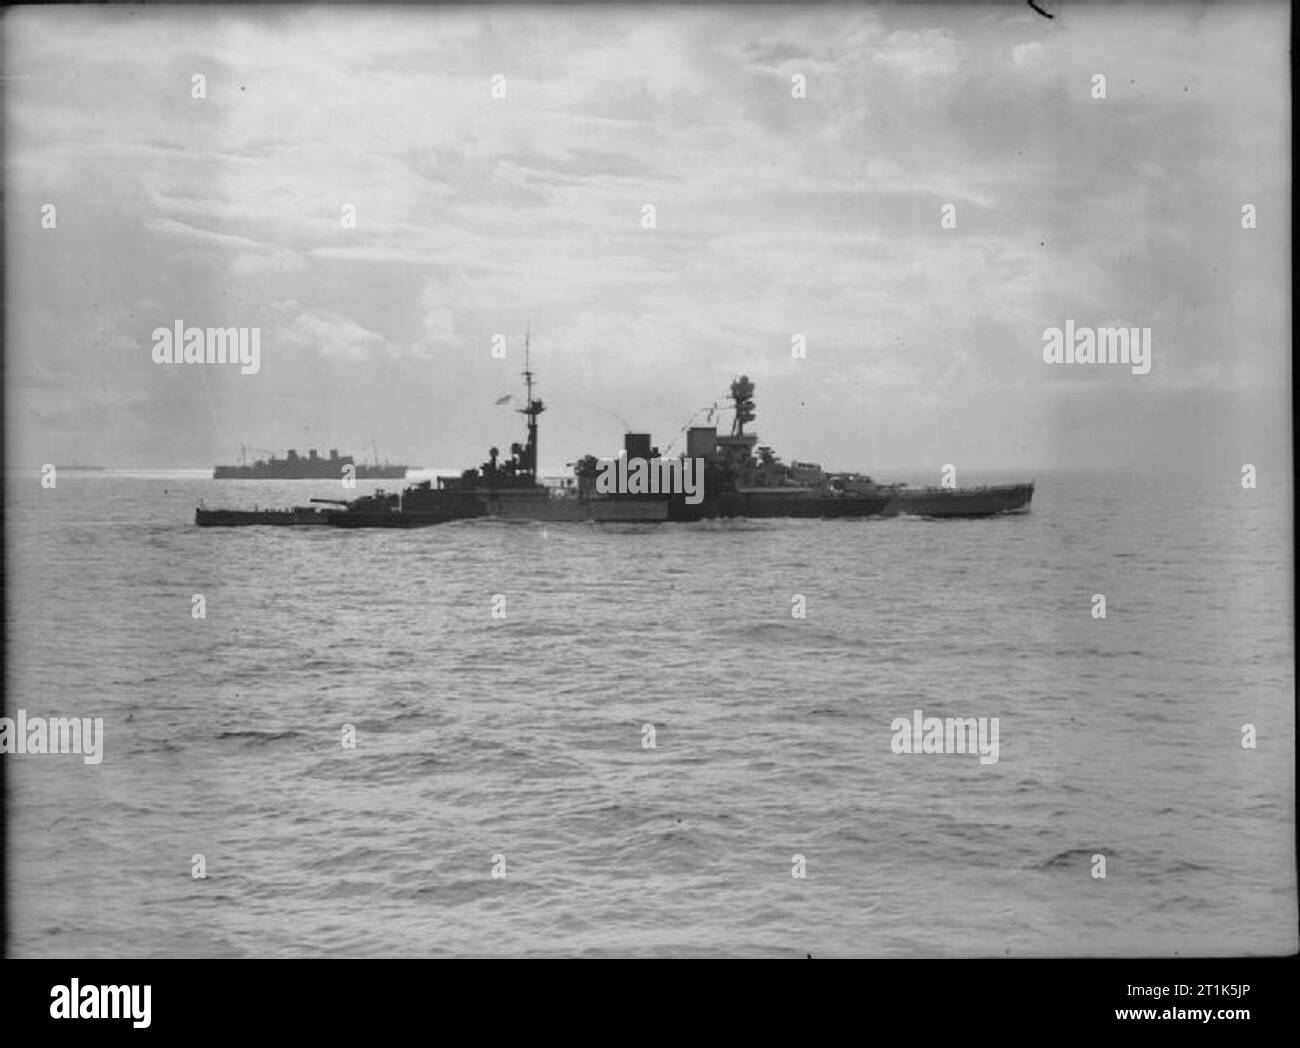 Die Royal Navy während des Zweiten Weltkrieges die battlecruiser HMS REPULSE, in einem Dazzle camouflage Scheme gemalt, während der Begleitung des letzten Truppe Konvoi Singapur zu erreichen. Das Schiff war ein paar Tage später mit großem Verlust des Lebens am 10. Dezember 1941 Von japanischen Torpedos versenkt. Der Untergang, zusammen mit der HMS PRINCE OF WALES, war ein entsetzlicher Schlag für britische Prestige in den Fernen Osten. Stockfoto